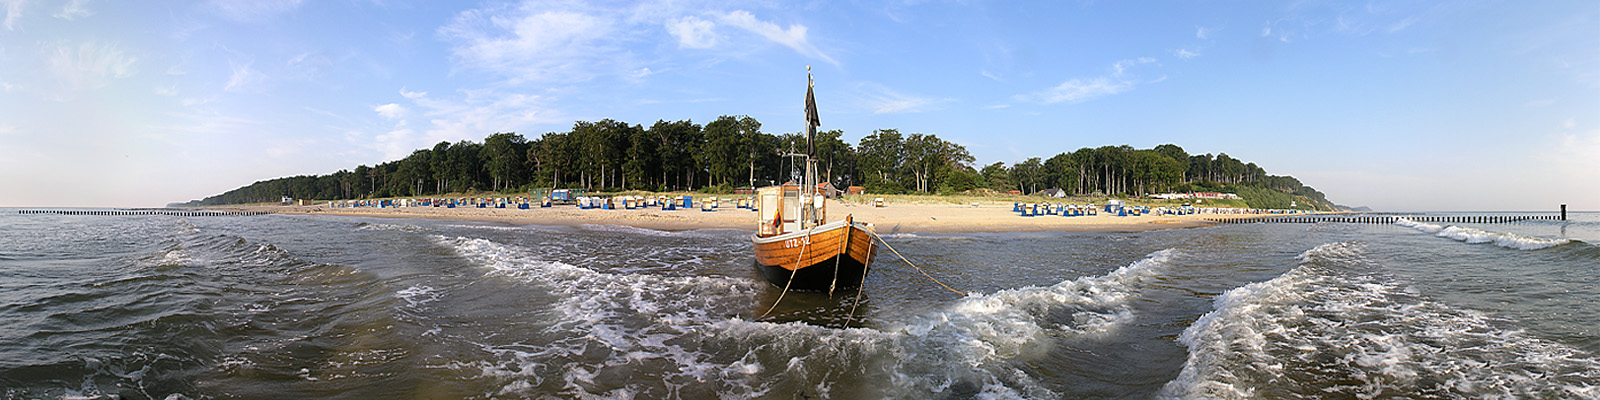 Panorama: Ückeritz Fischerboot I - Motivnummer: use-uec-02